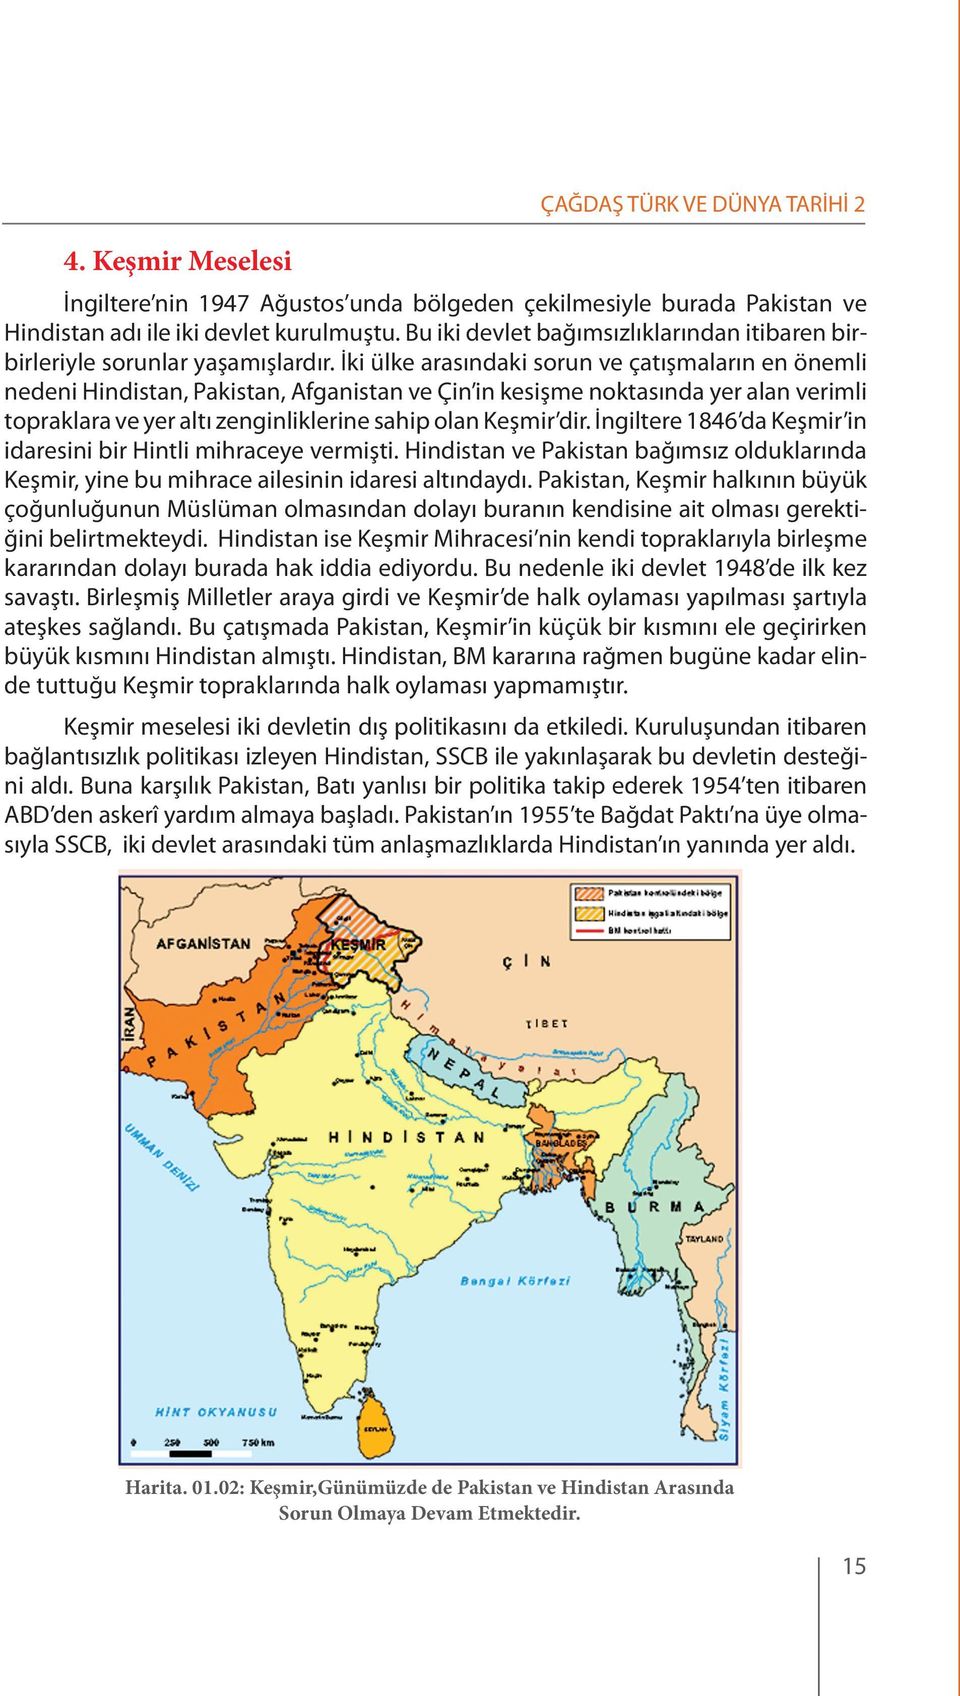 İki ülke arasındaki sorun ve çatışmaların en önemli nedeni Hindistan, Pakistan, Afganistan ve Çin in kesişme noktasında yer alan verimli topraklara ve yer altı zenginliklerine sahip olan Keşmir dir.